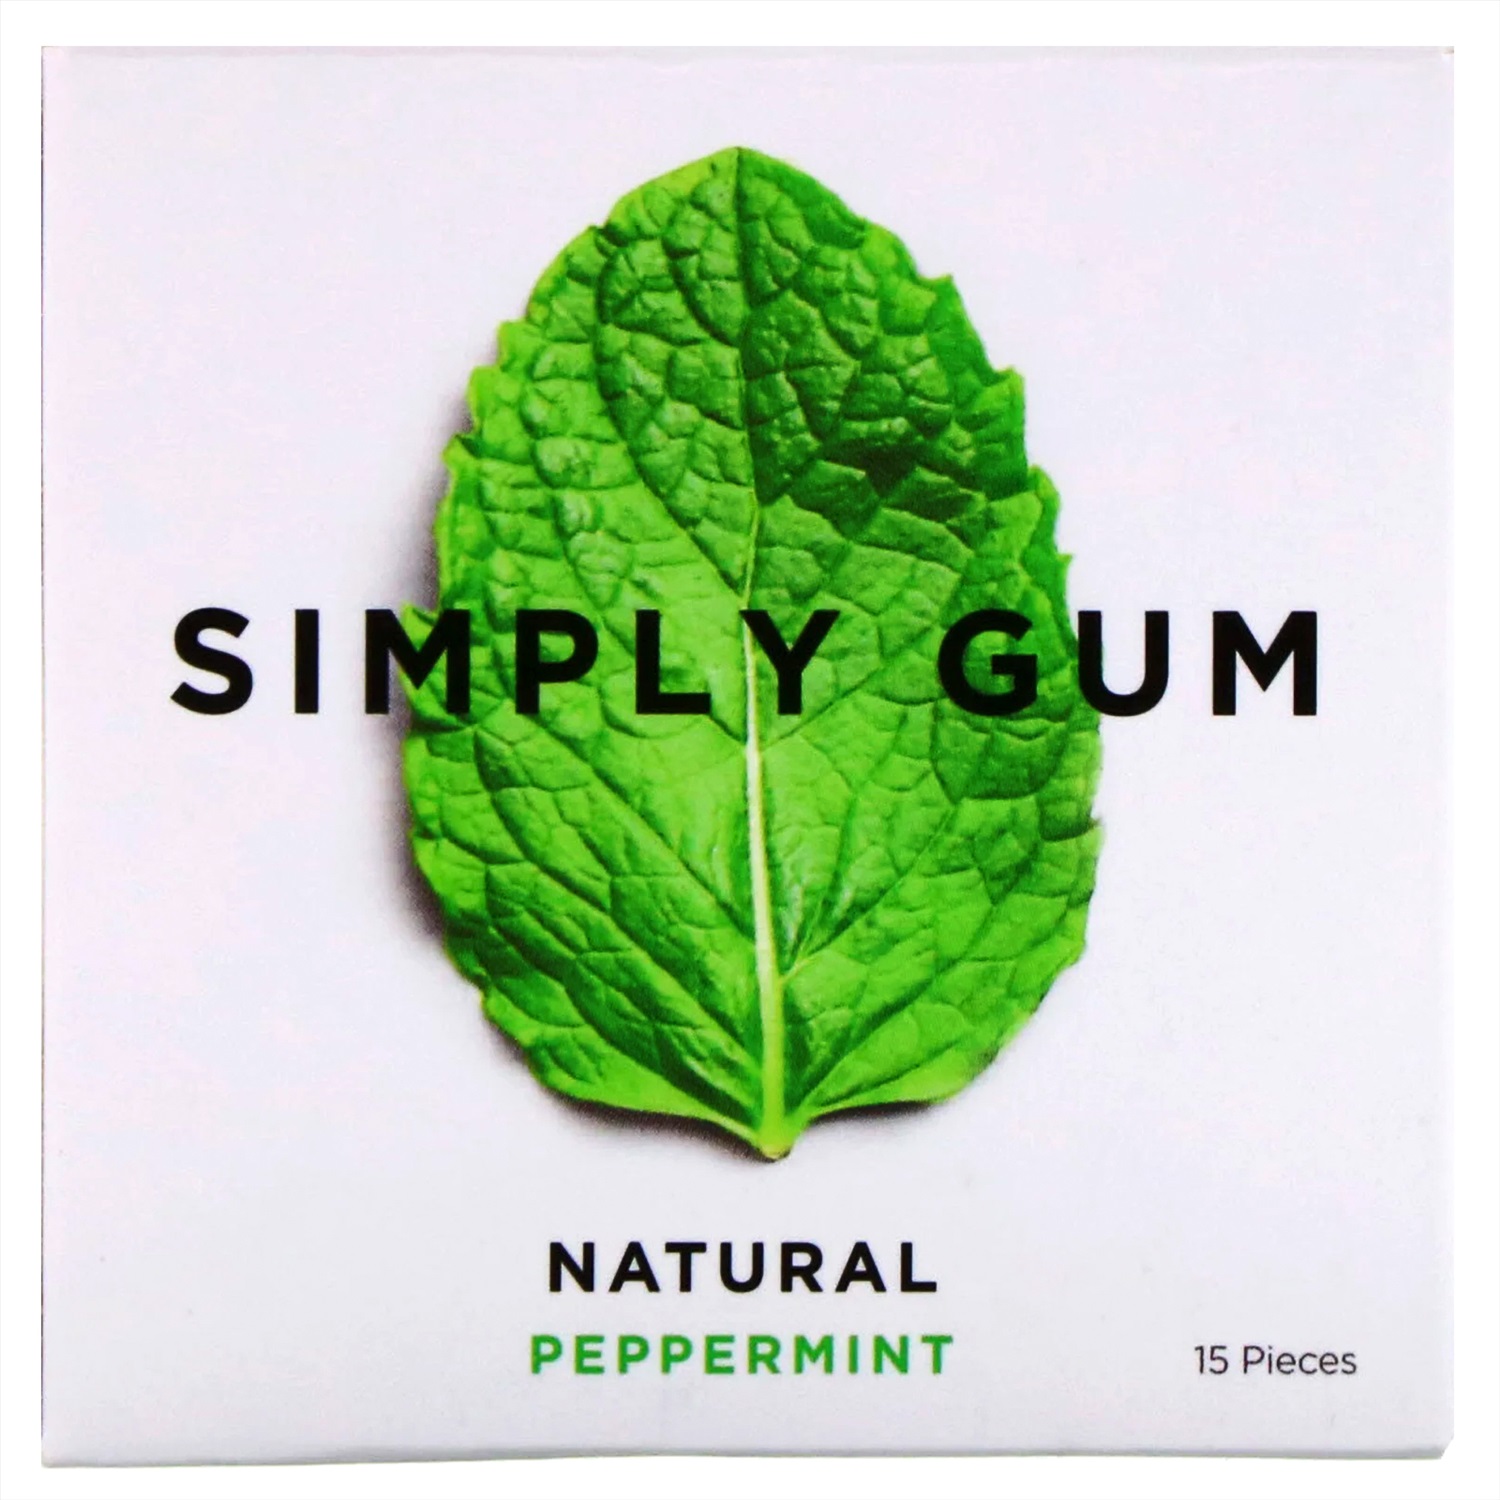 Simply gum